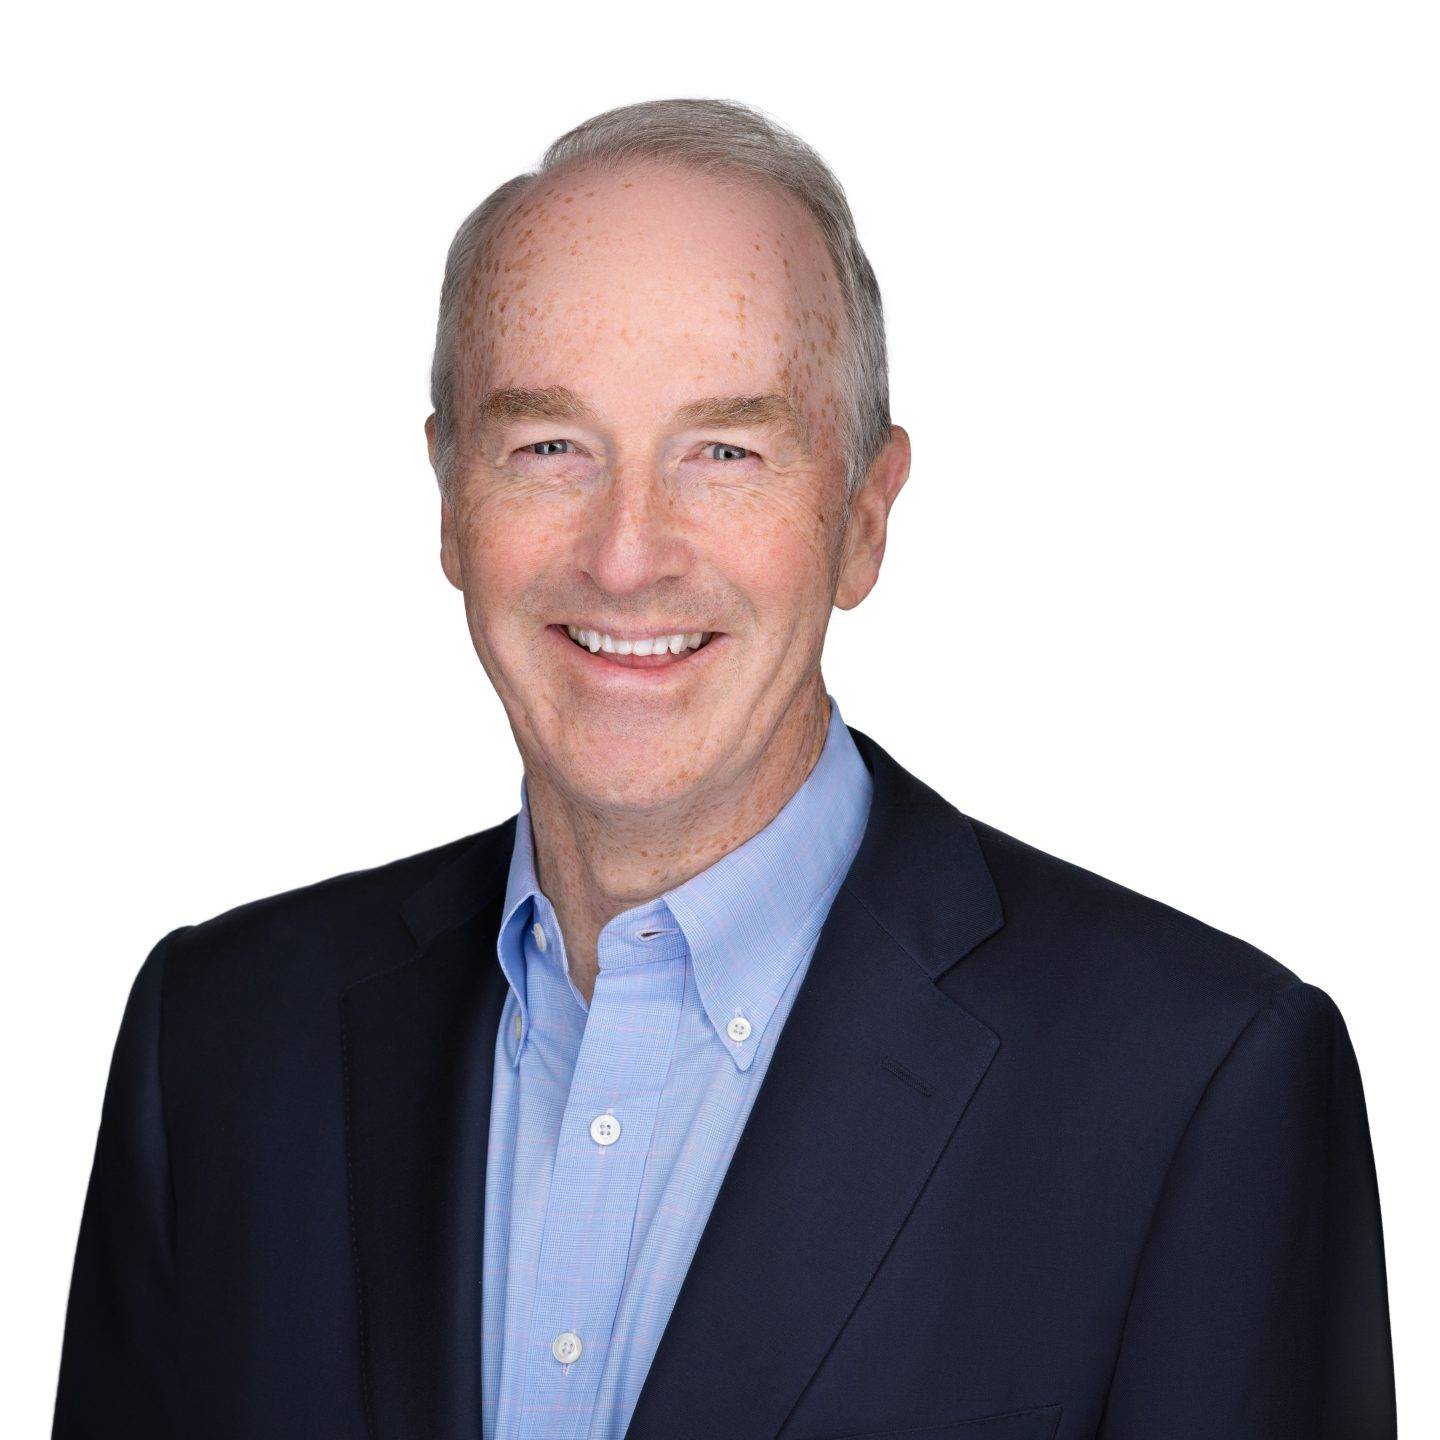 Disney names PepsiCo veteran Hugh Johnston as Senior Executive VP and CFO